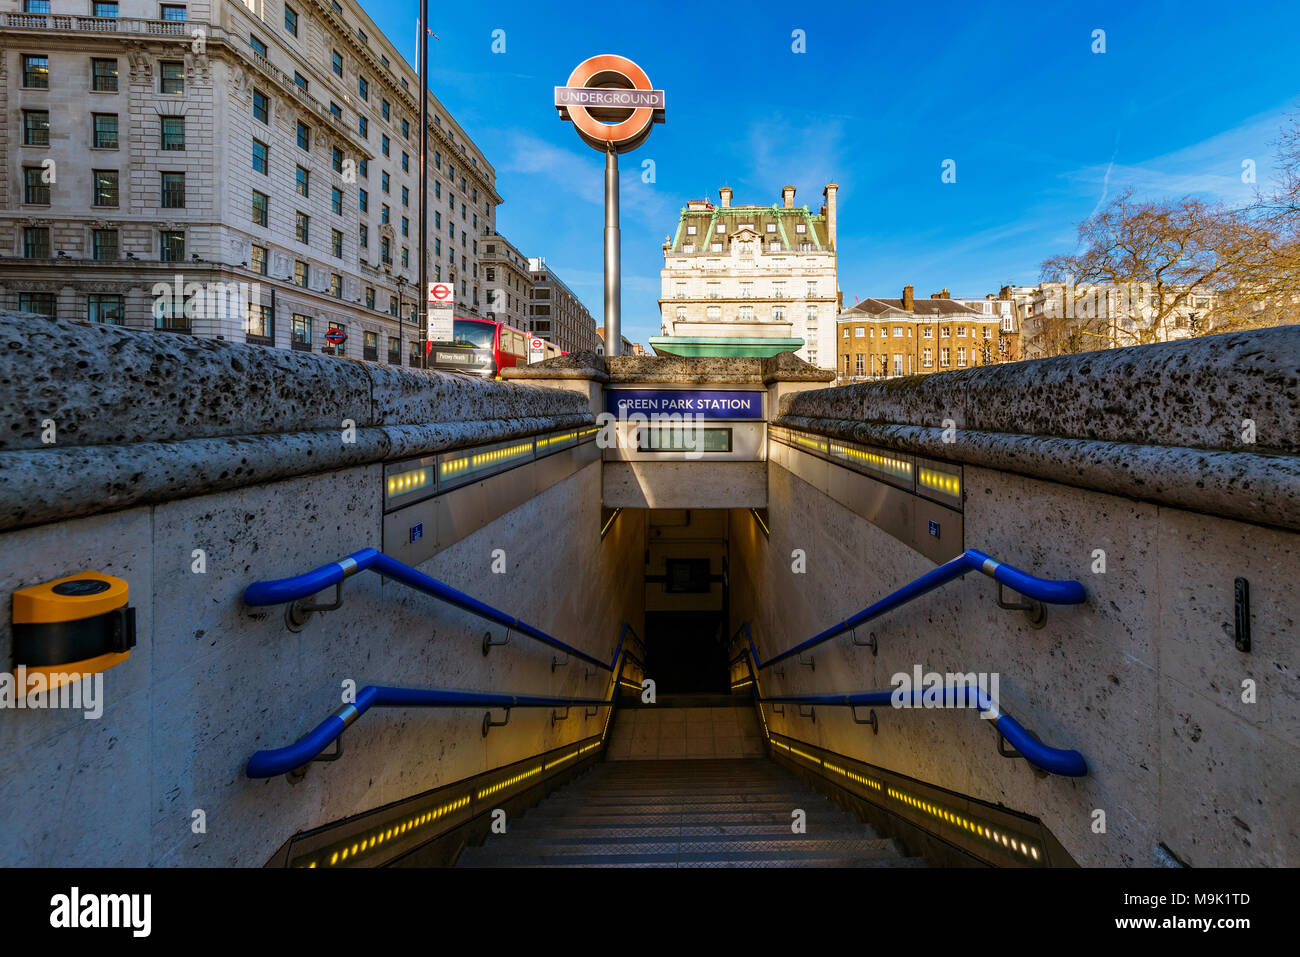 LONDON, Regno Unito - 21 Marzo: Green Park tube station ingresso, questa è una delle principali stazioni della metropolitana nella zona centrale di Londra il 21 marzo 2018 Foto Stock